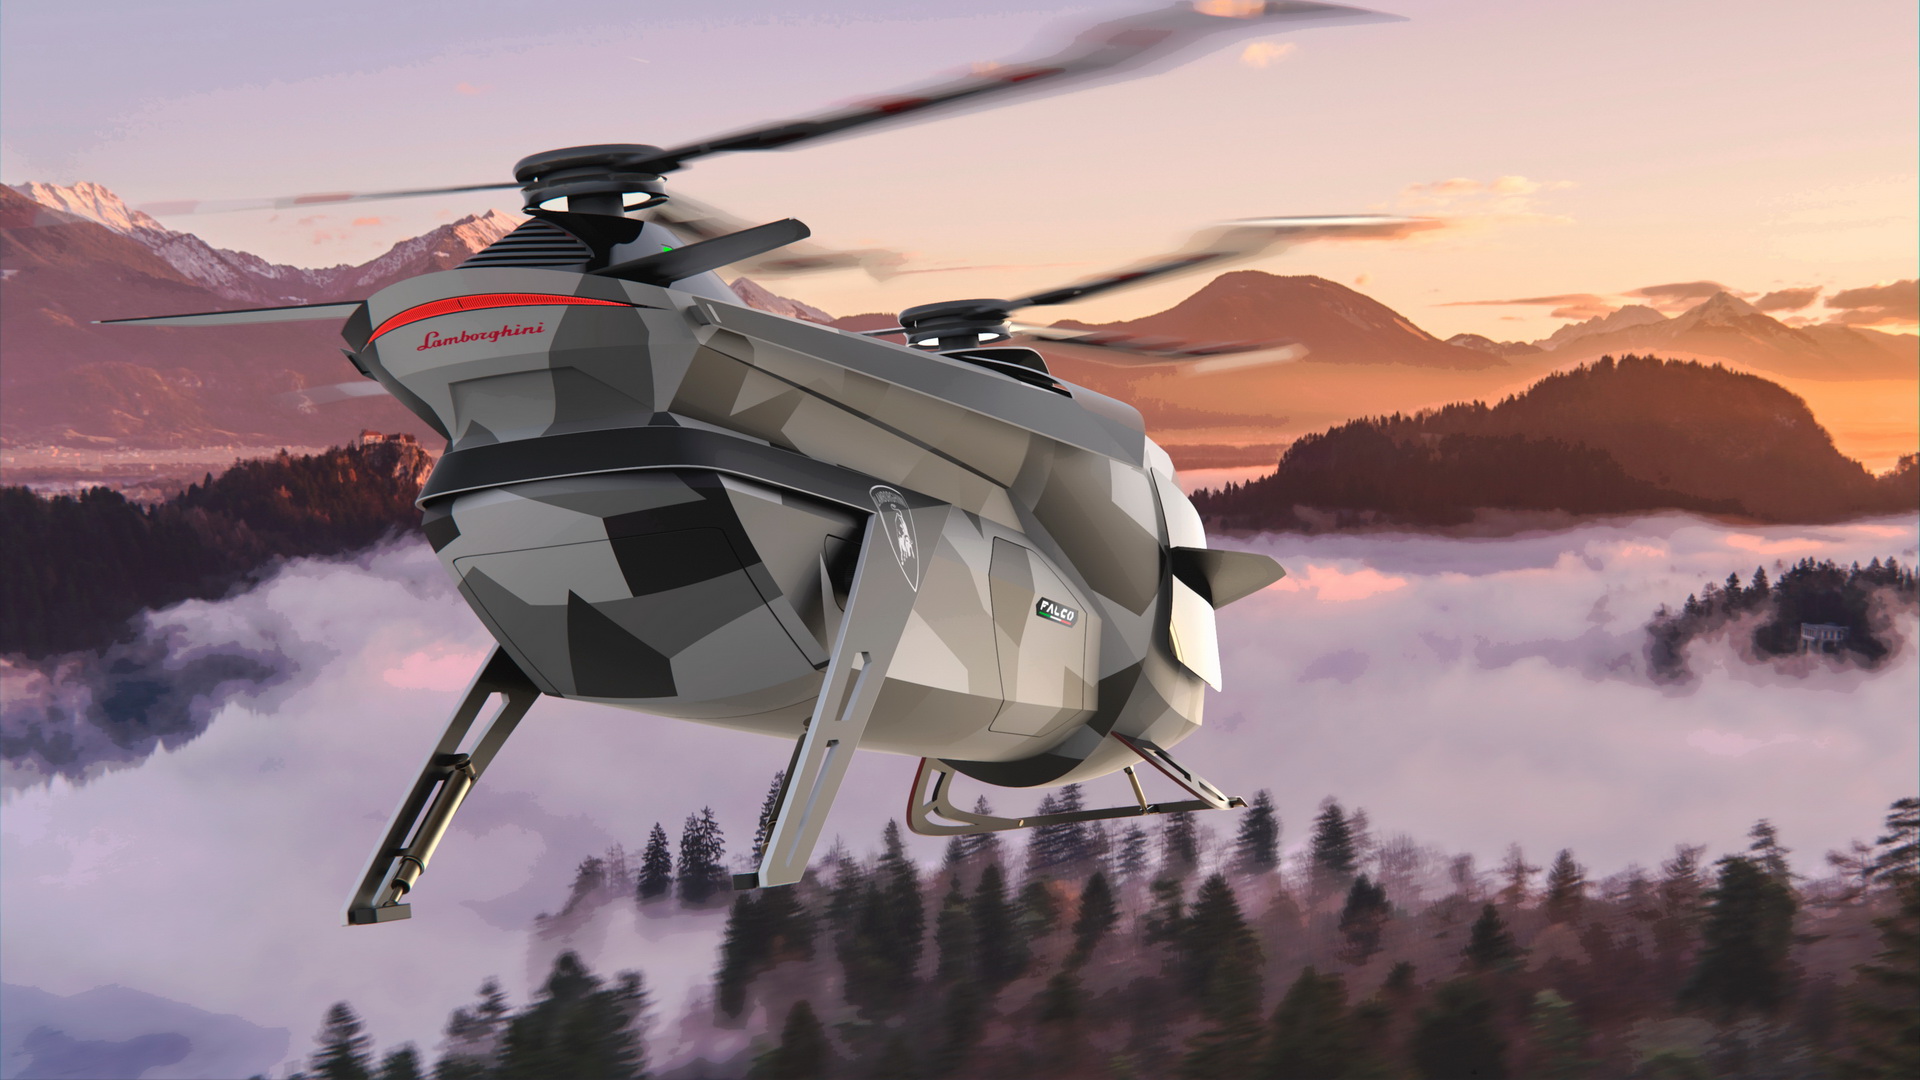 Siêu xe chưa là gì, Lamborghini chuẩn bị có cả siêu trực thăng